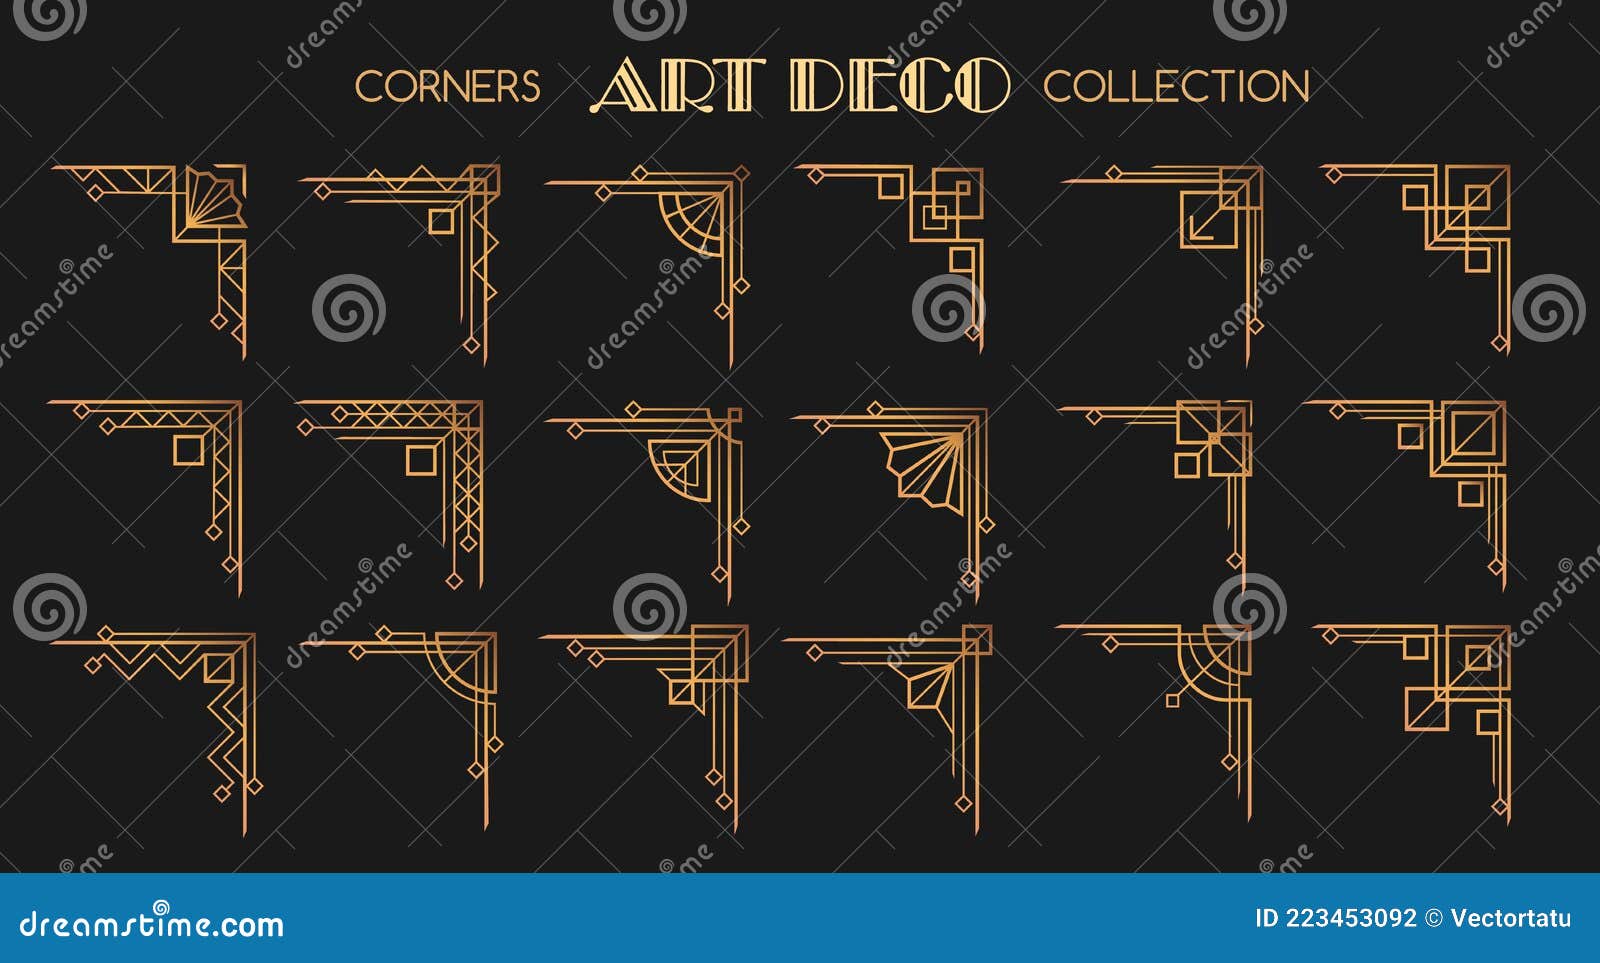 price Discourage Monetary Art deco corners set stock vector. Illustration of calligraphic - 223453092